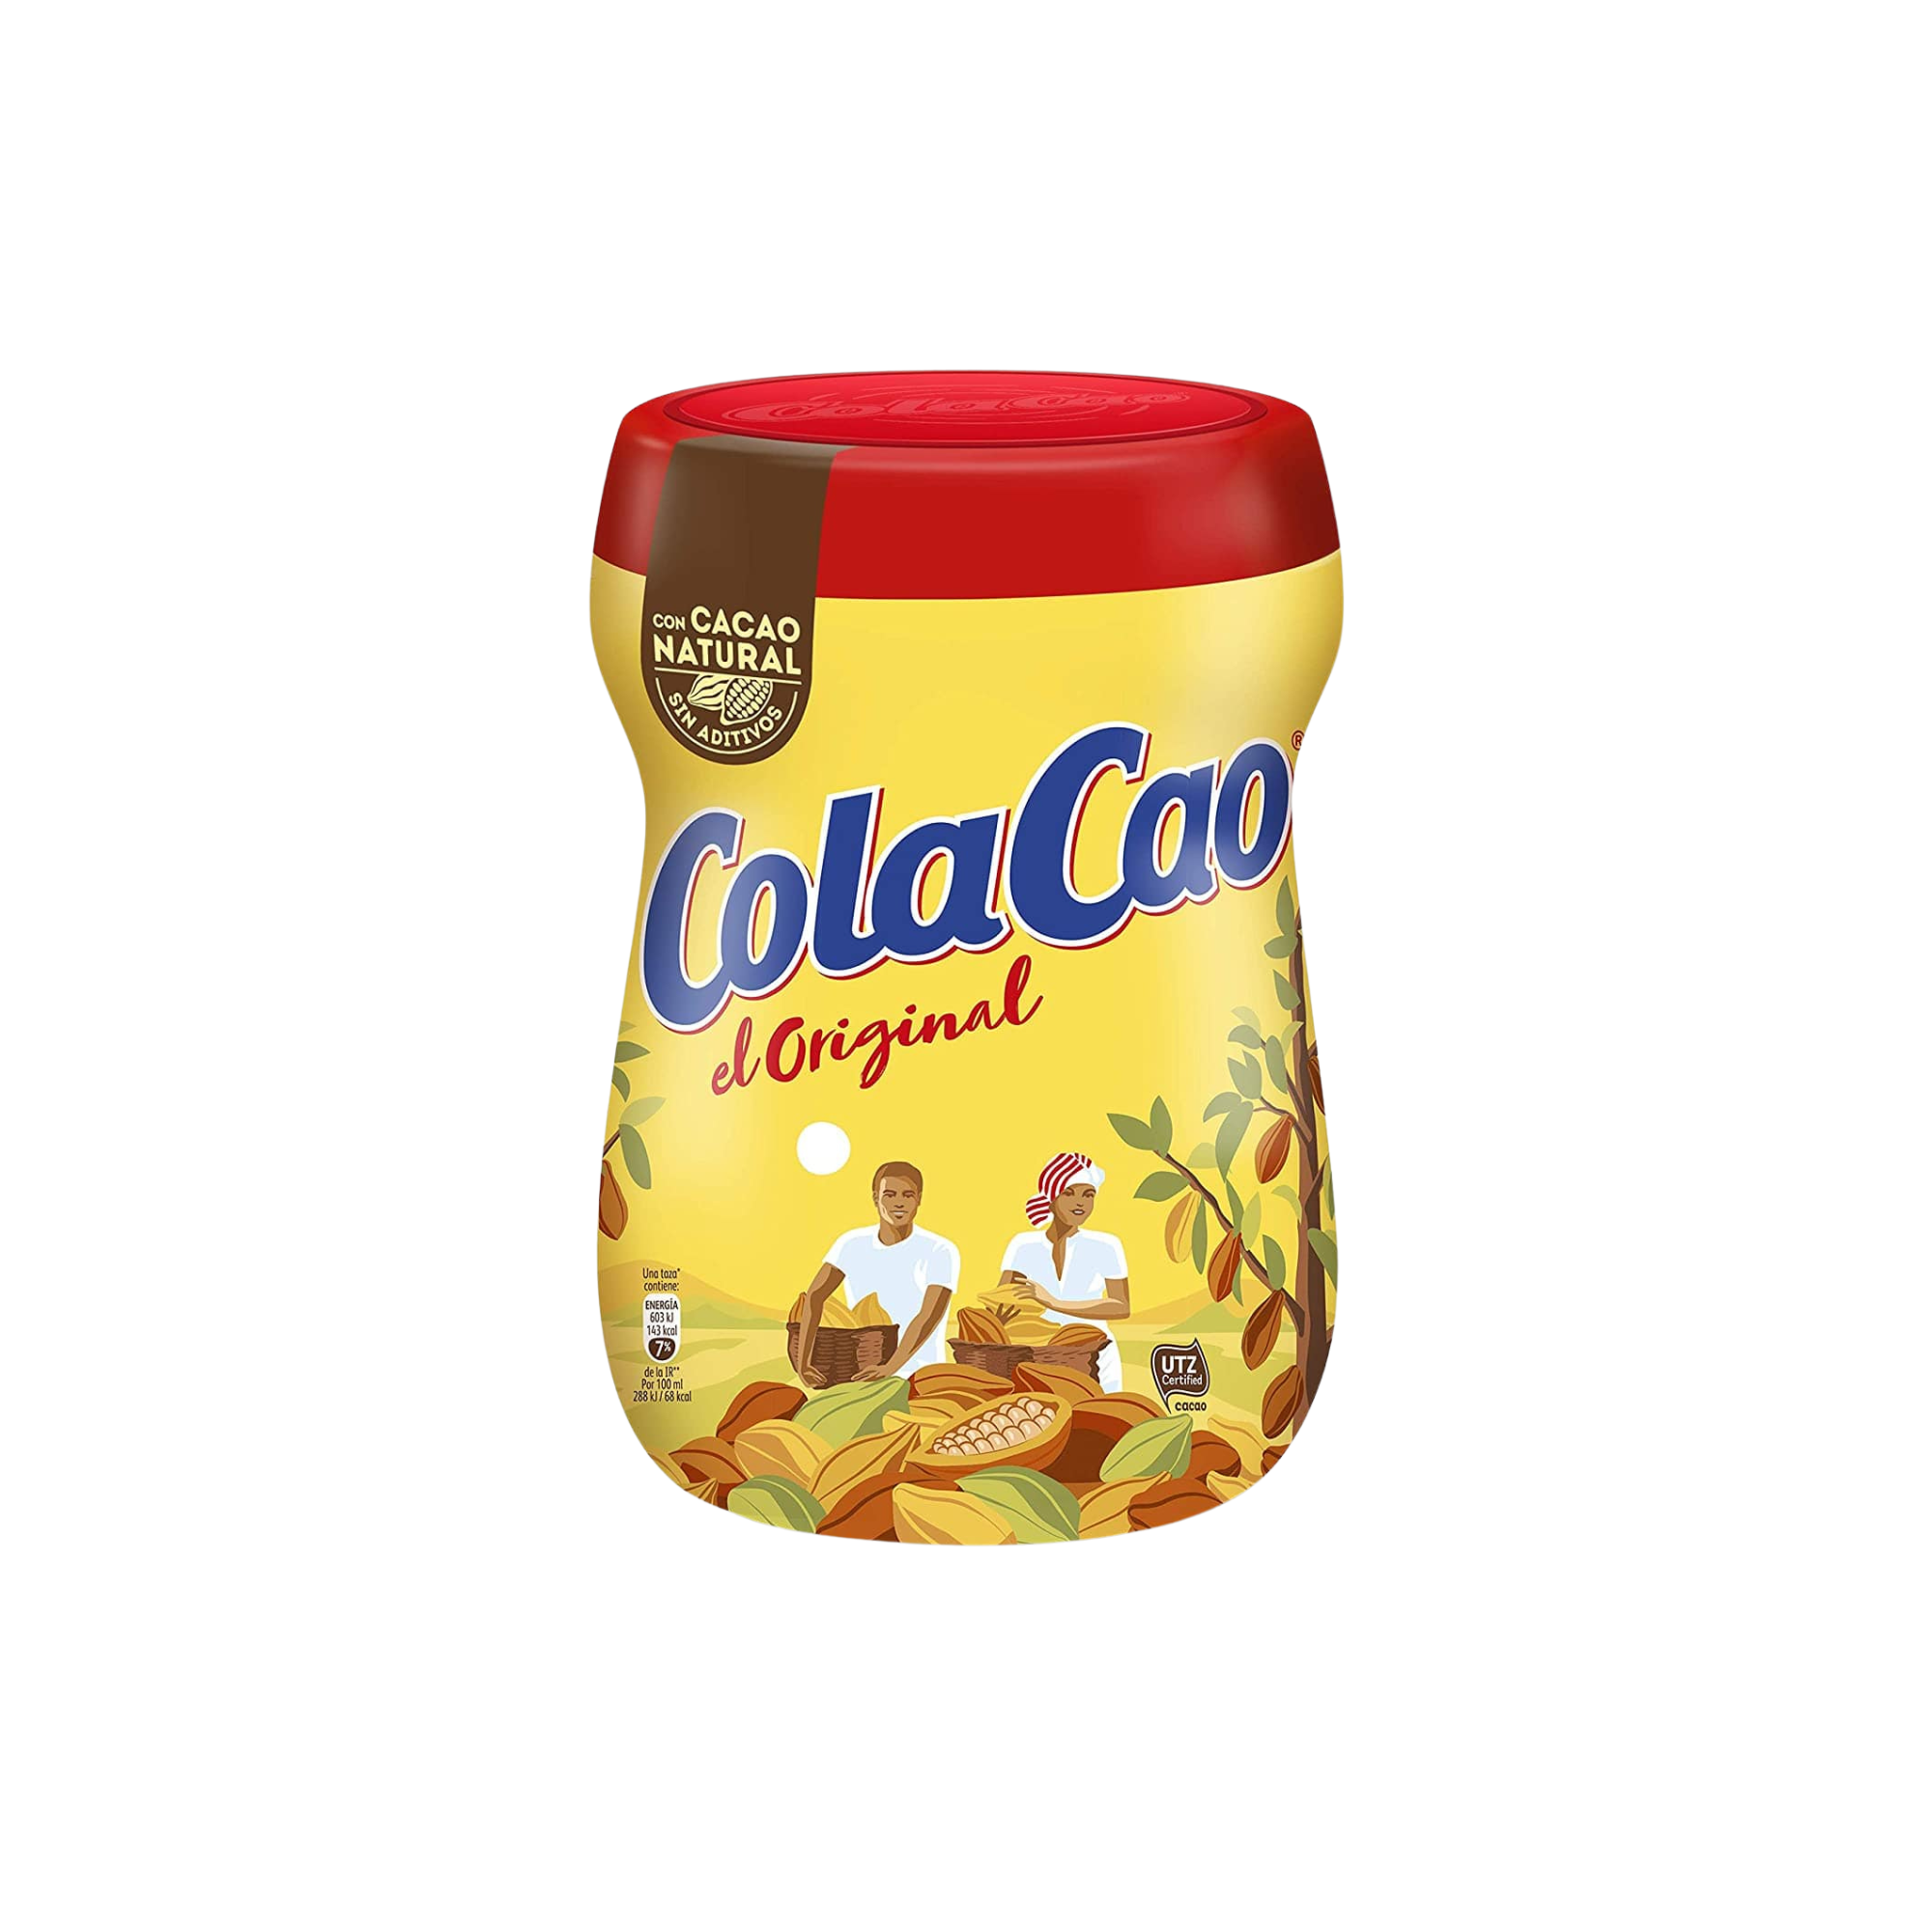 Original Cola Cao Chocolate Drink Mix